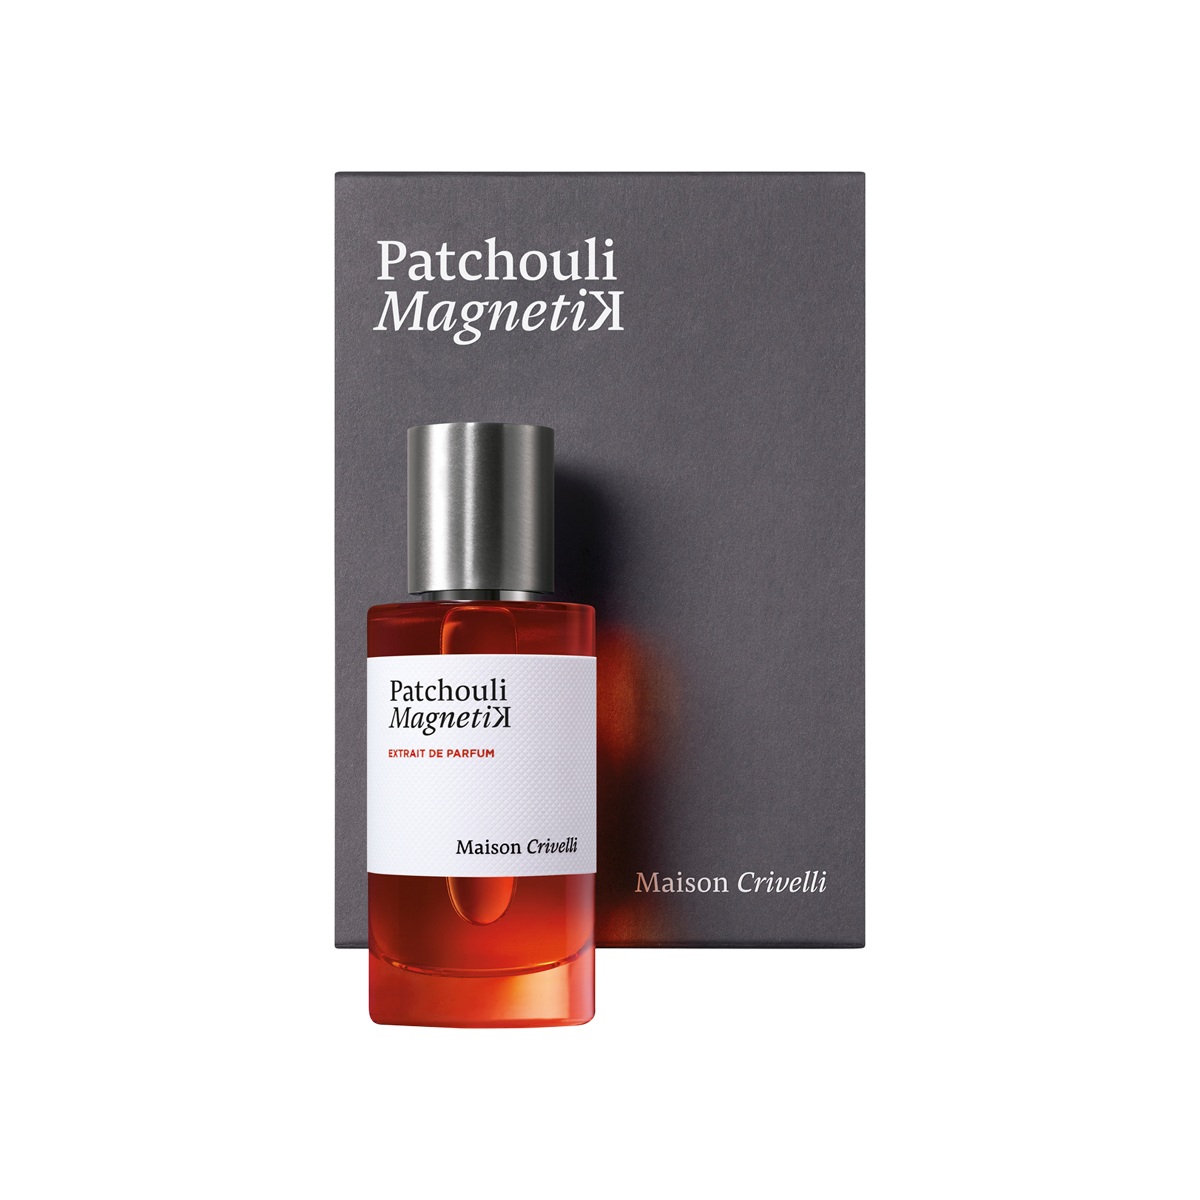 Maison Crivelli - Patchouli Magnetik Extrait de Parfum